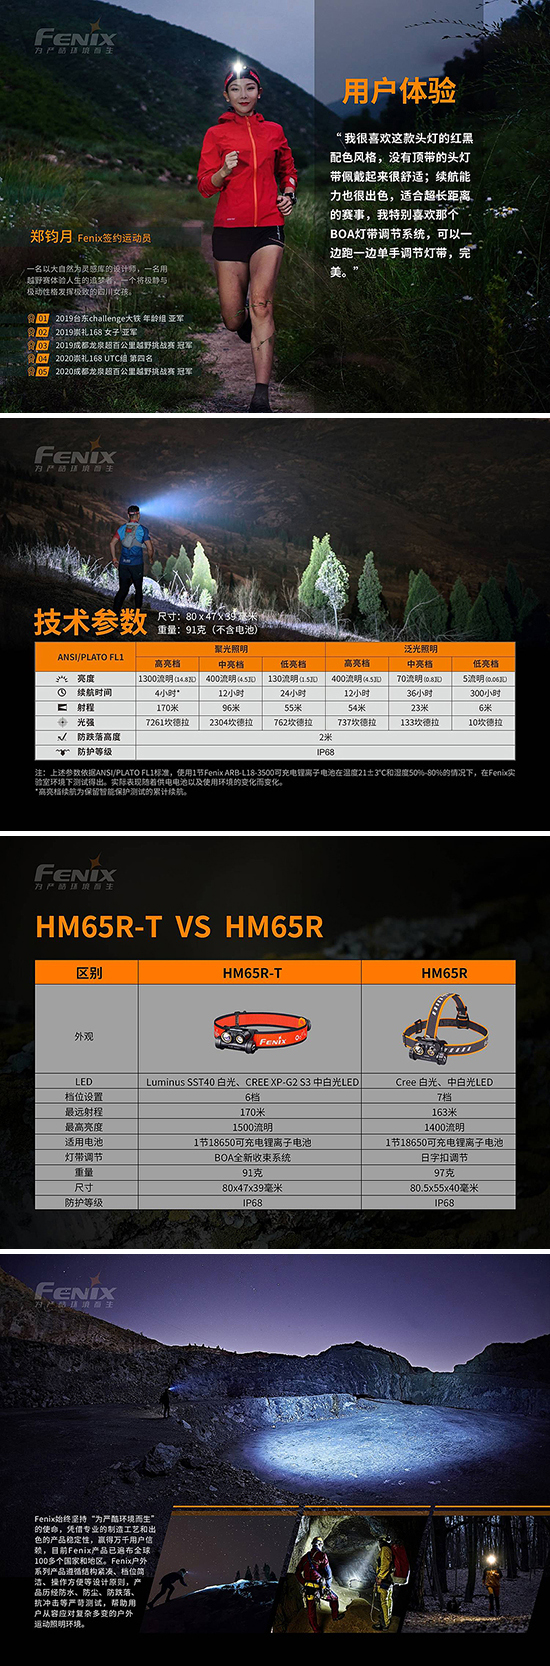 hm65r-t-800-15-2.jpg